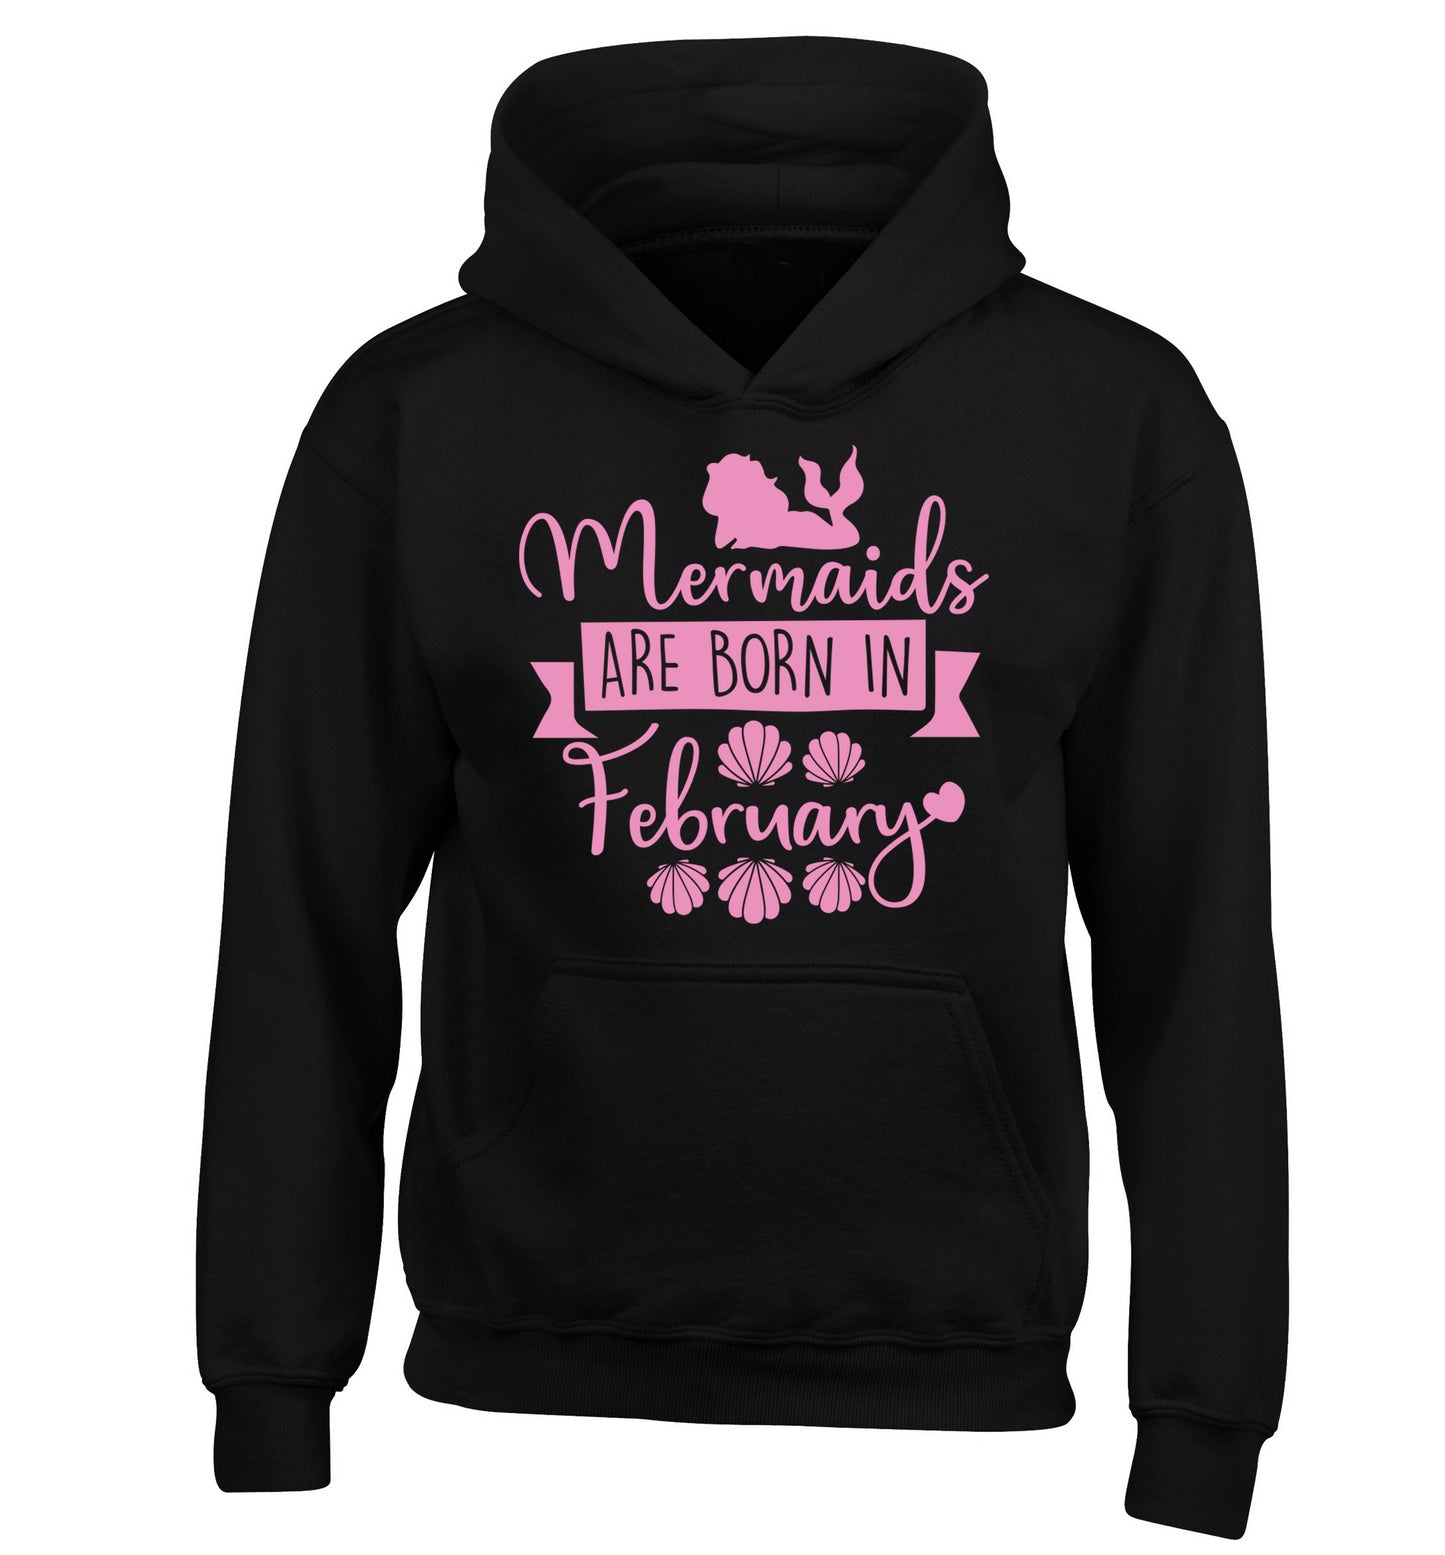 Mermaids are born in February children's black hoodie 12-13 Years